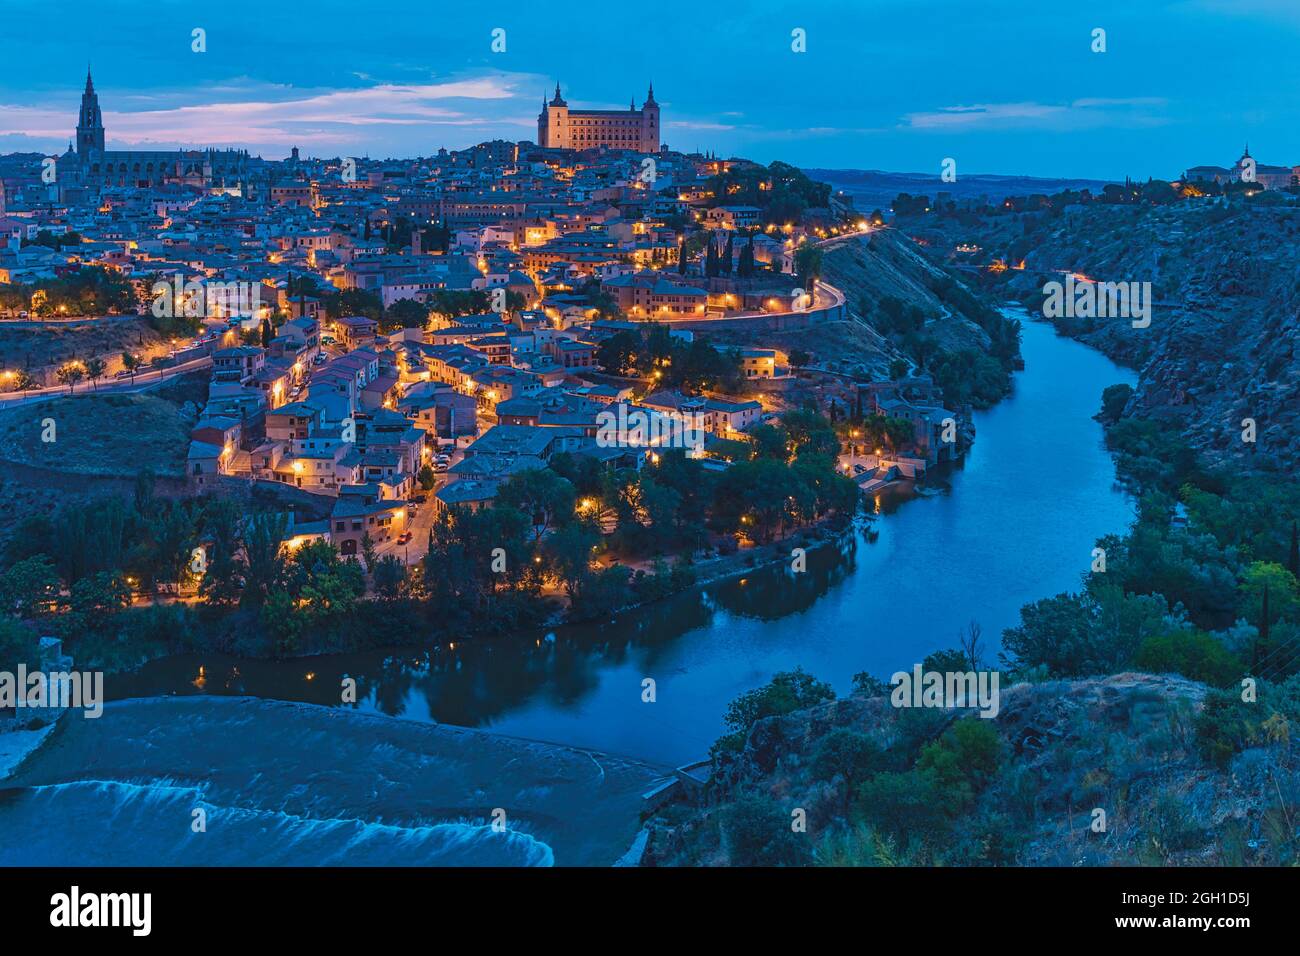 Toledo, Toledo Province, Castilla-La Mancha Spain. Overall view of the historic centre showing the Tagus River (Rio Tajo) and the Alcazar. The Stock Photo